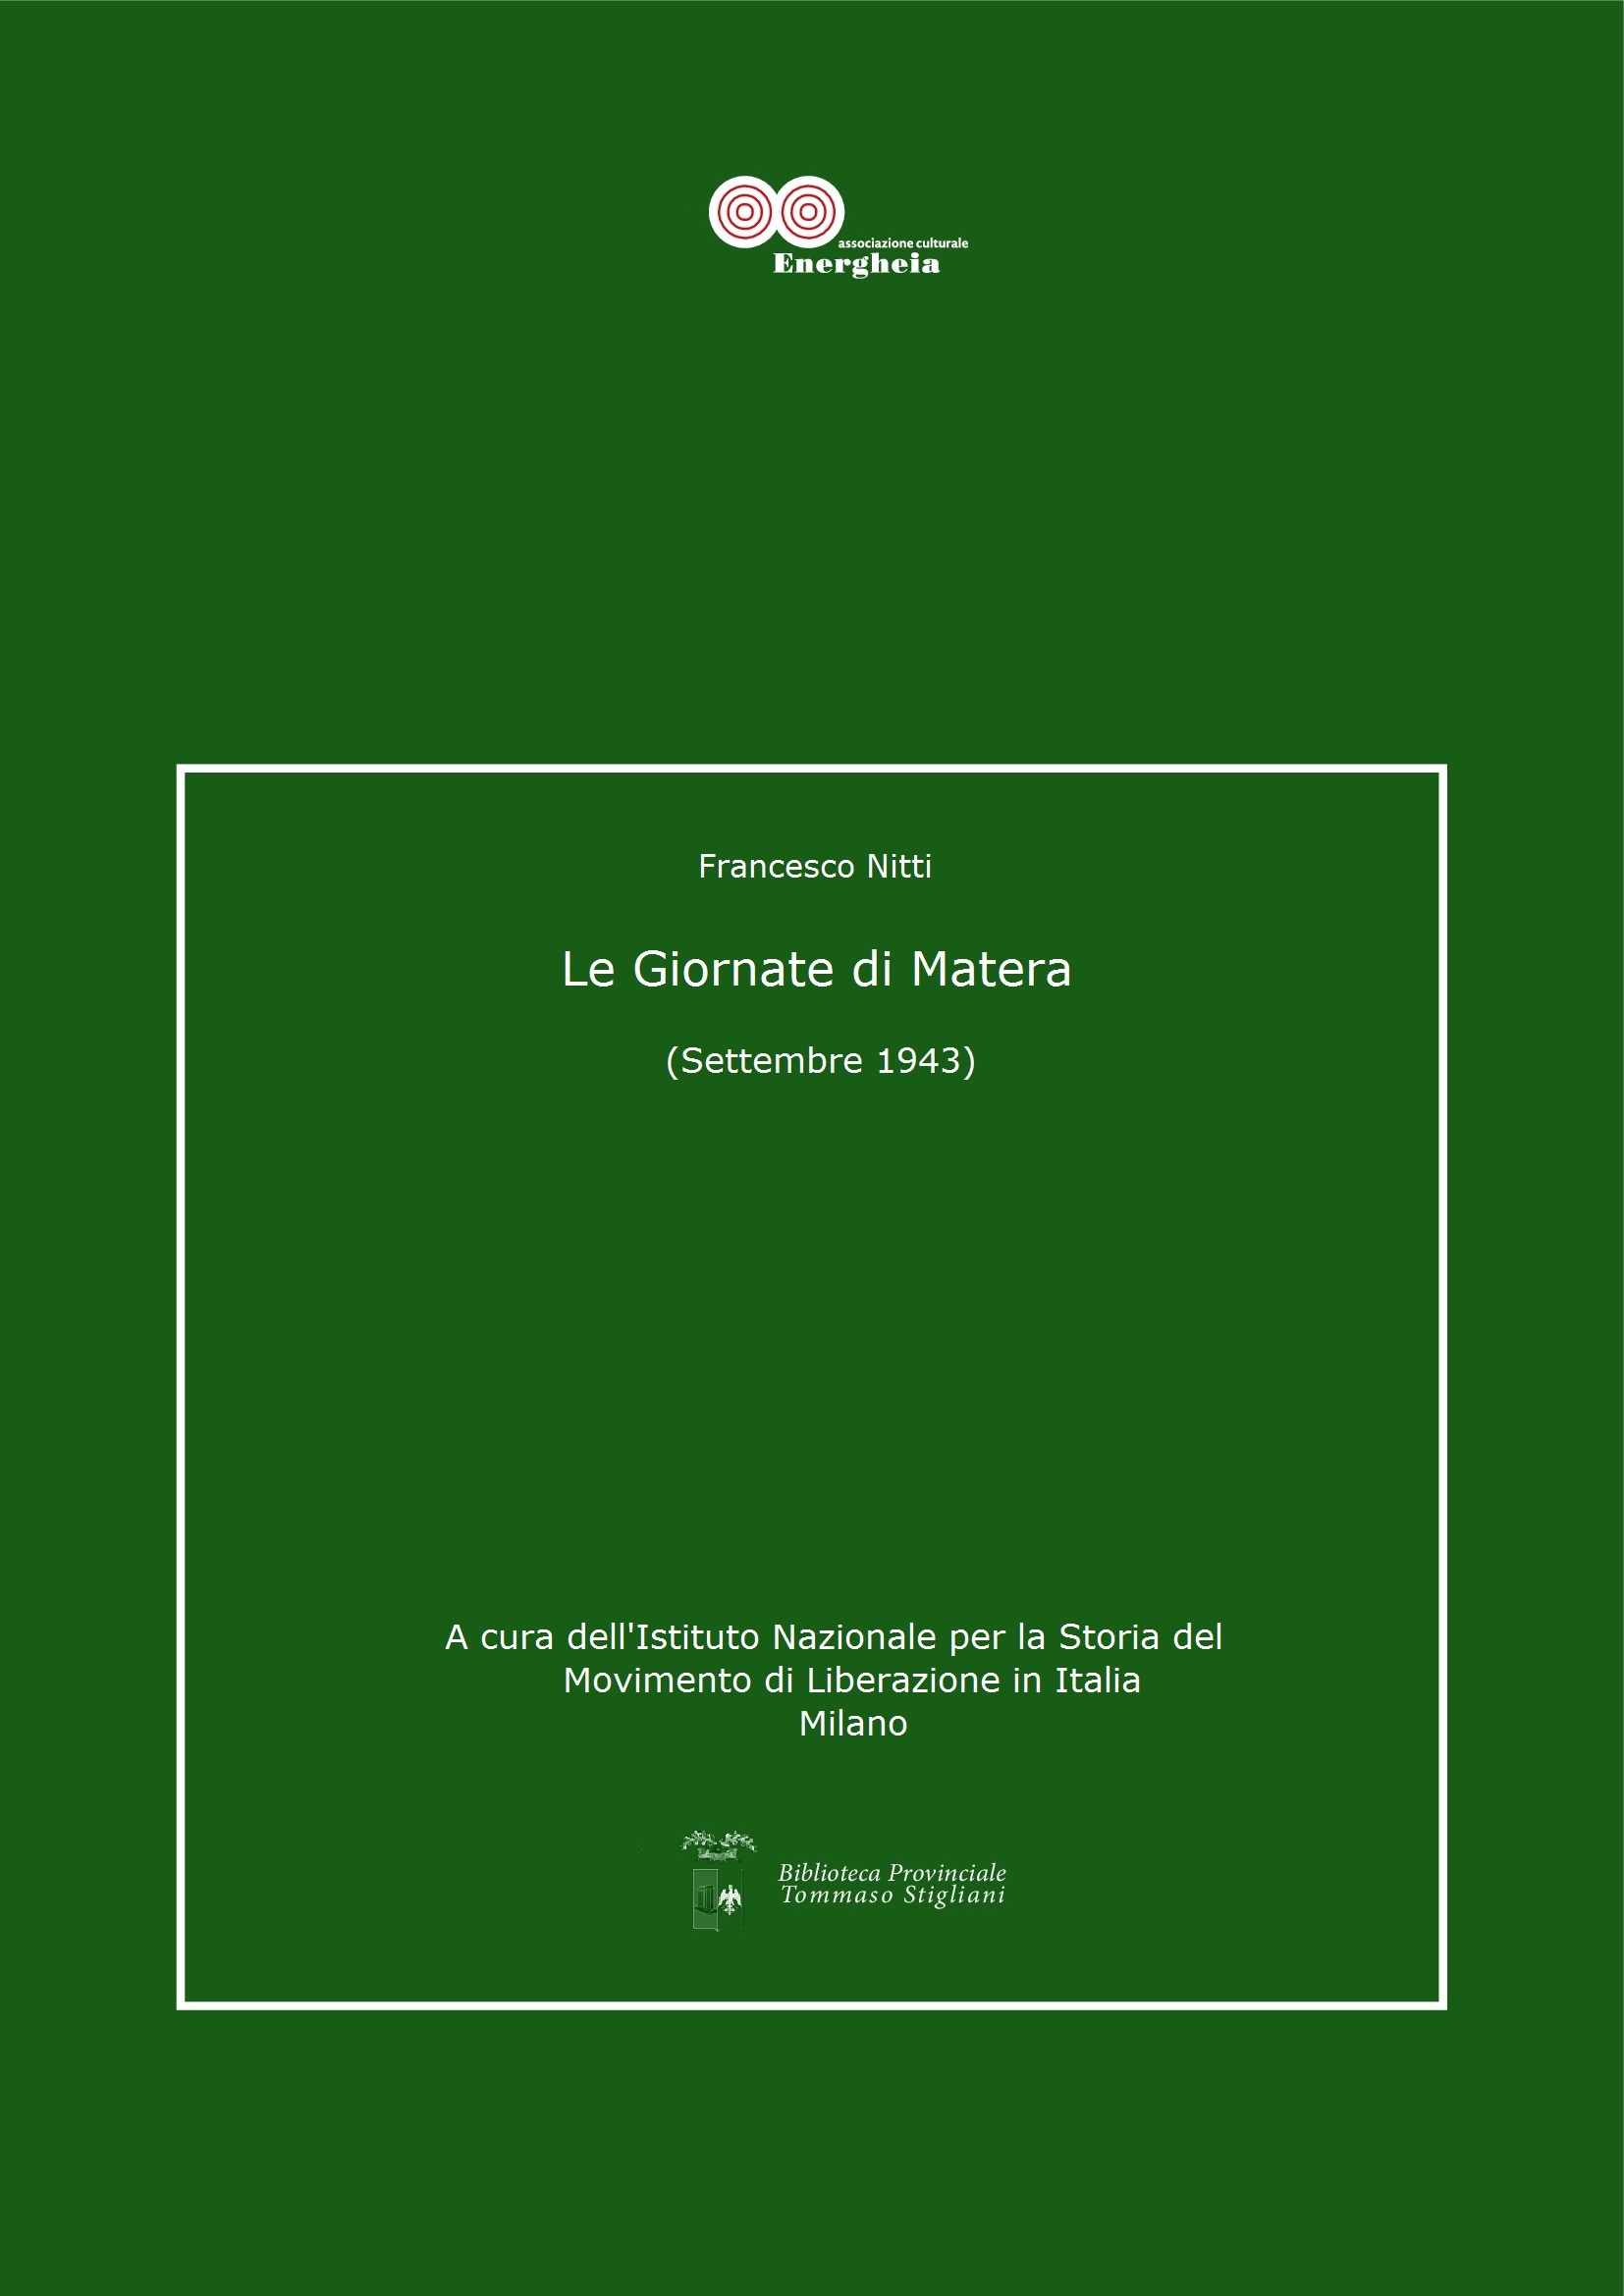 Francesco Nitti, Le Giornate di Matera_Settembre 1943 pdf